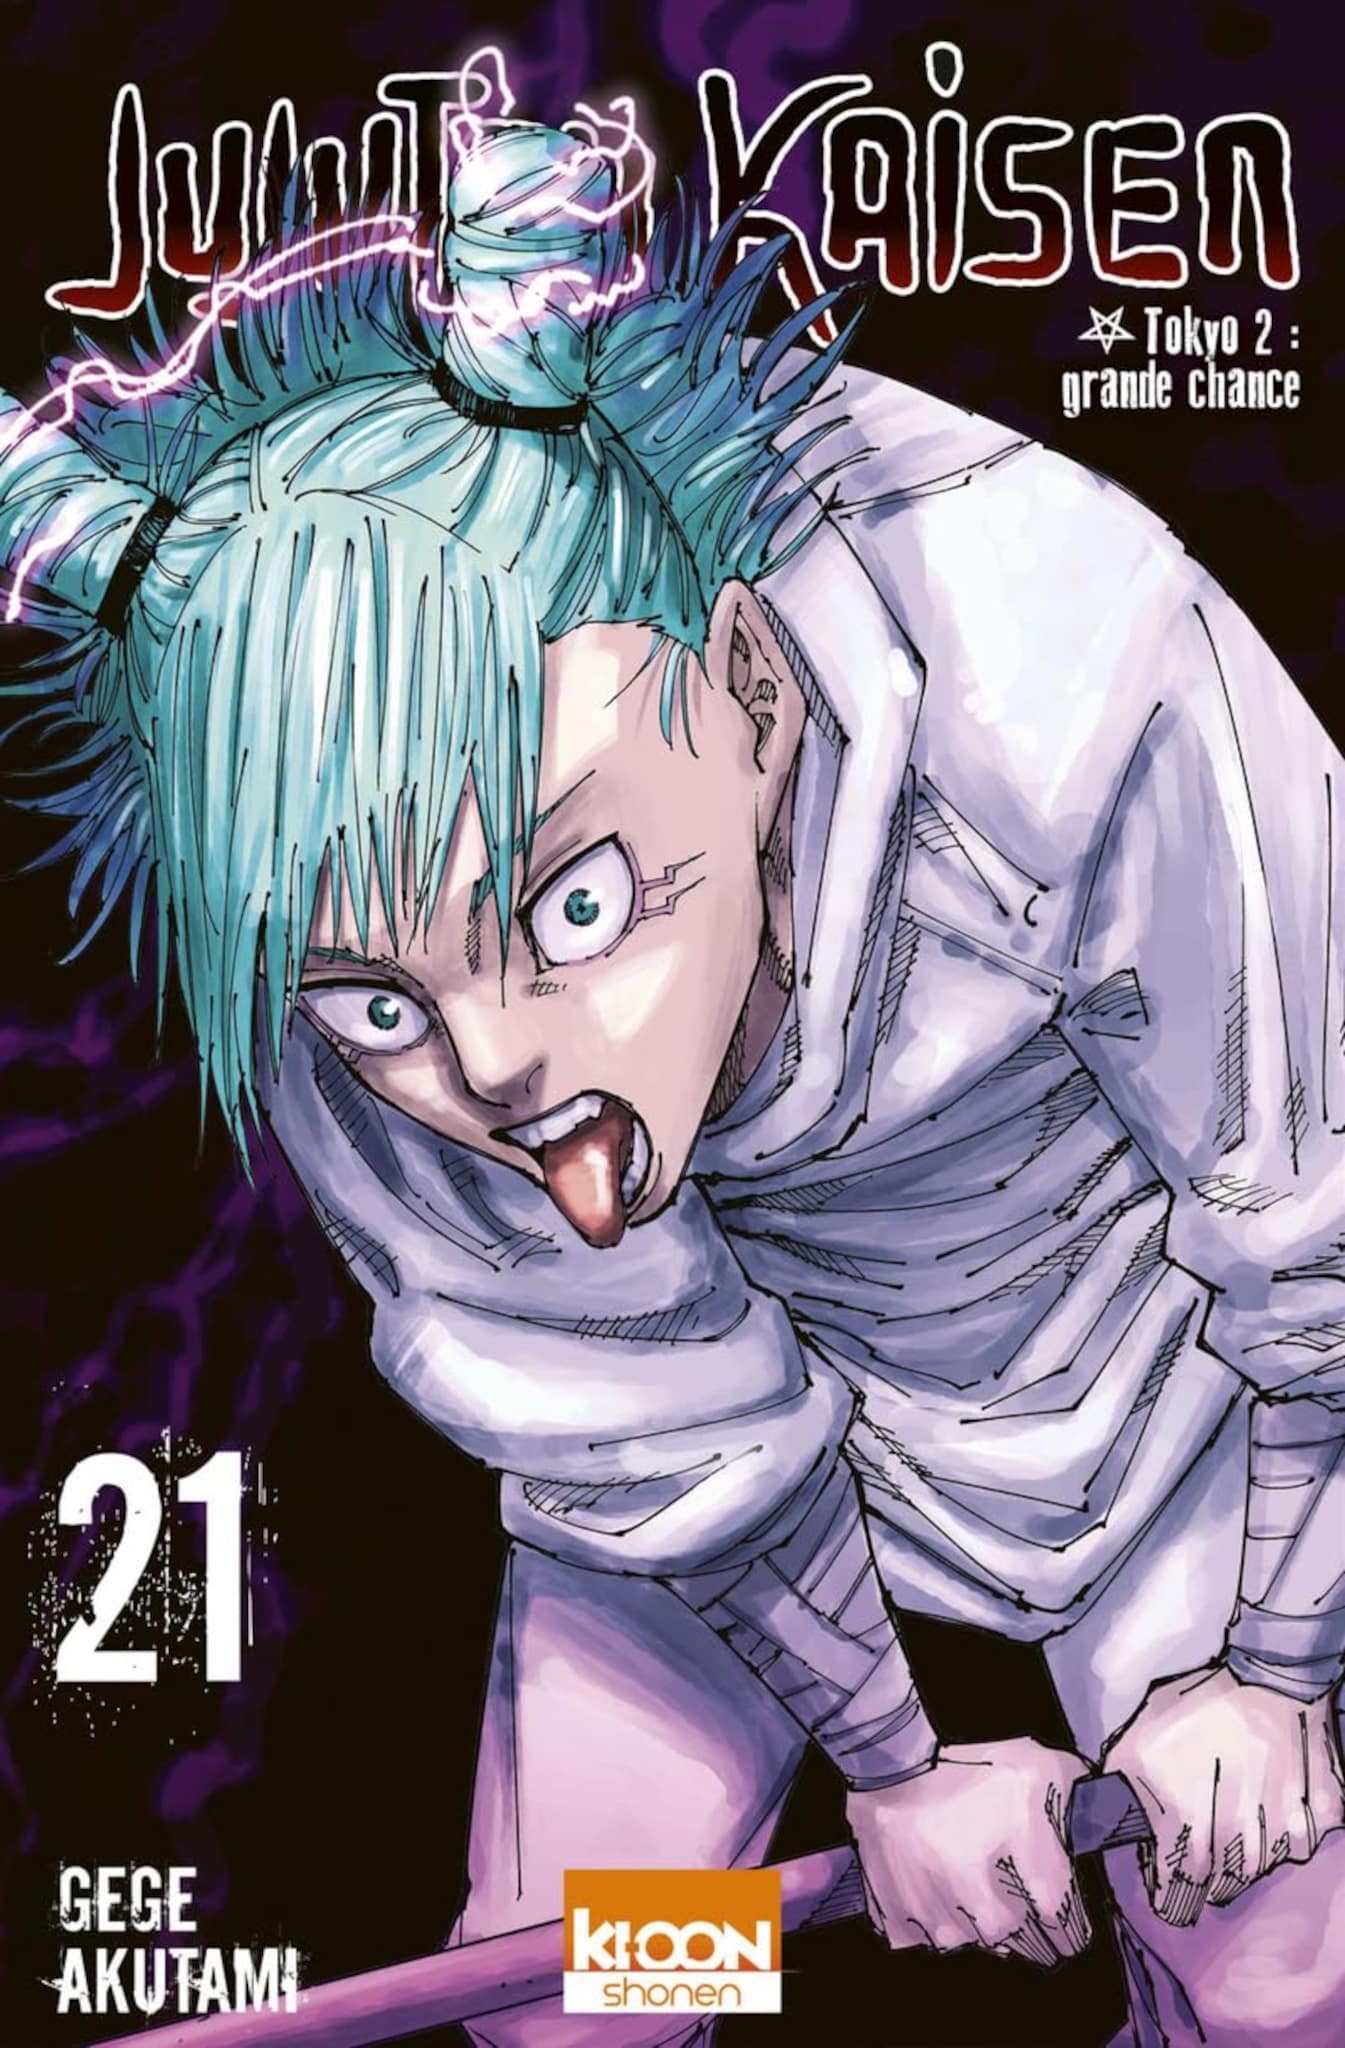 Tome 21 du manga Jujutsu Kaisen